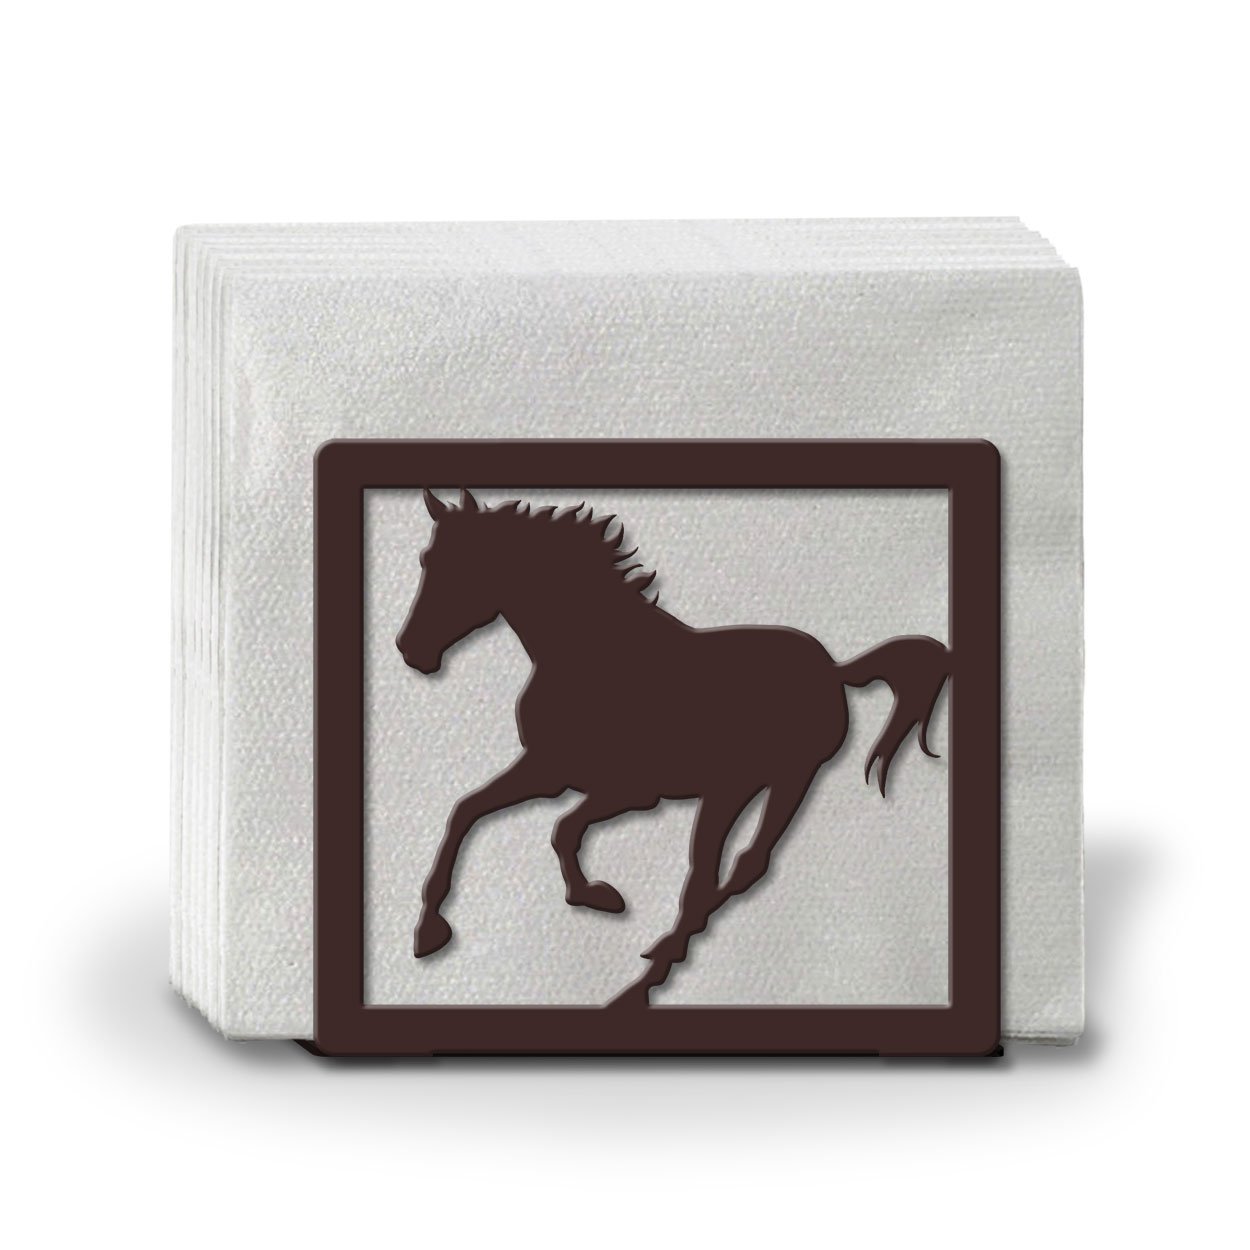 621118 - Running Horse Metal Napkin or Letter Holder - Choose Color